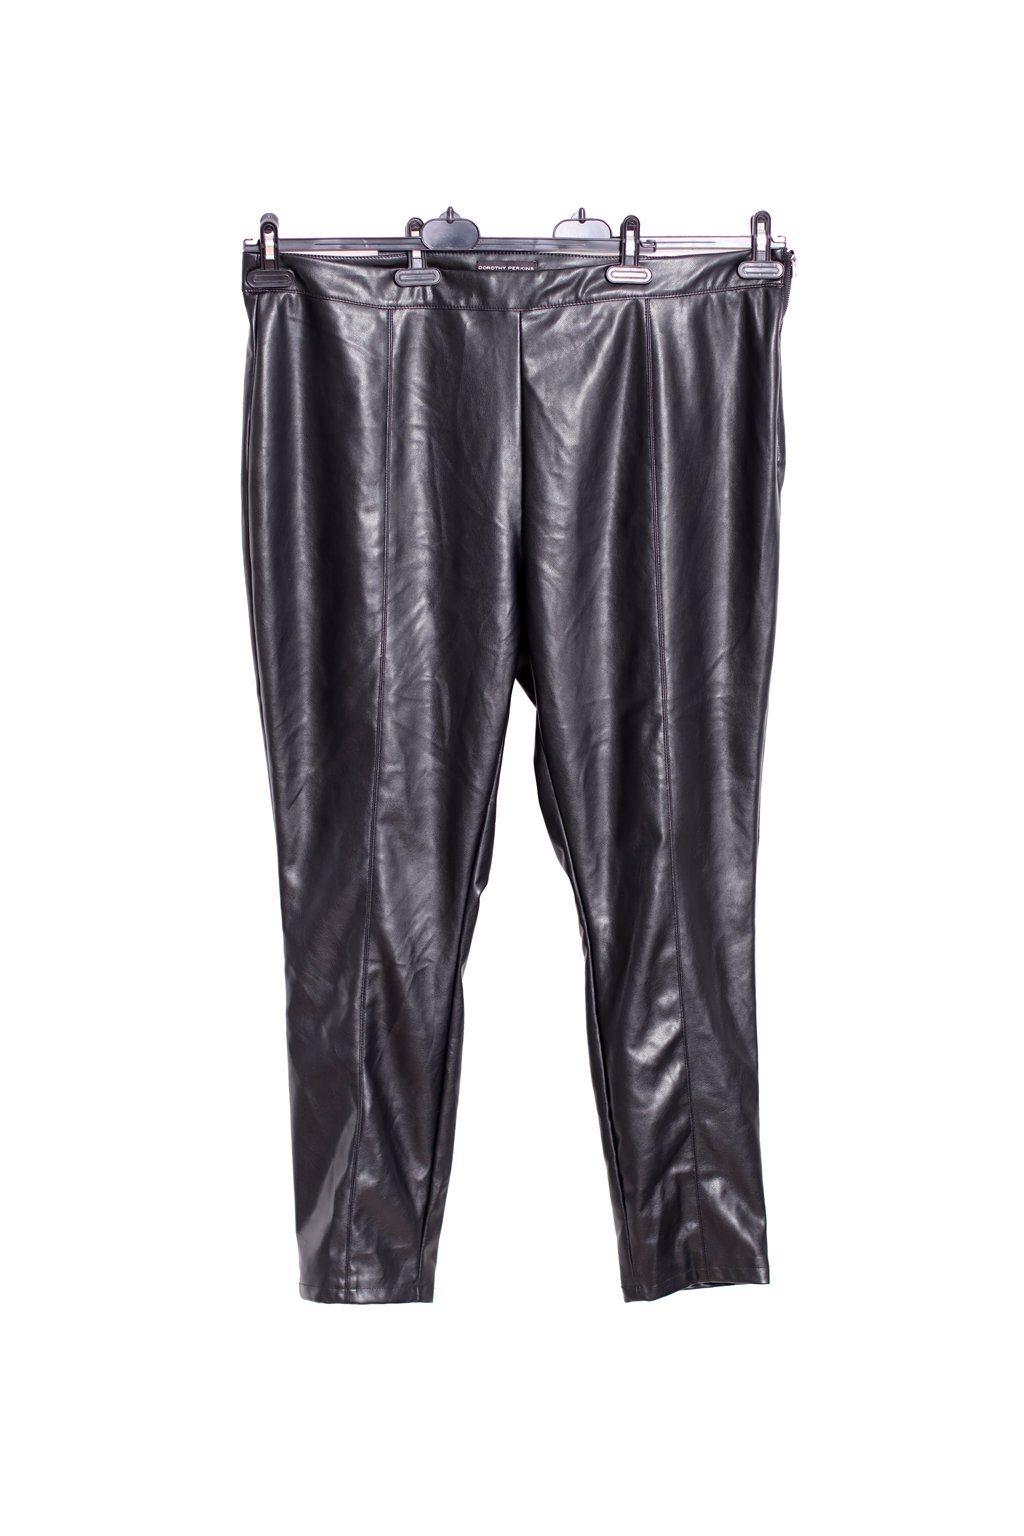 Dámské černé koženkové elastické kalhoty / Dorothy Perkins / XXXXL (52) / ANGLIE